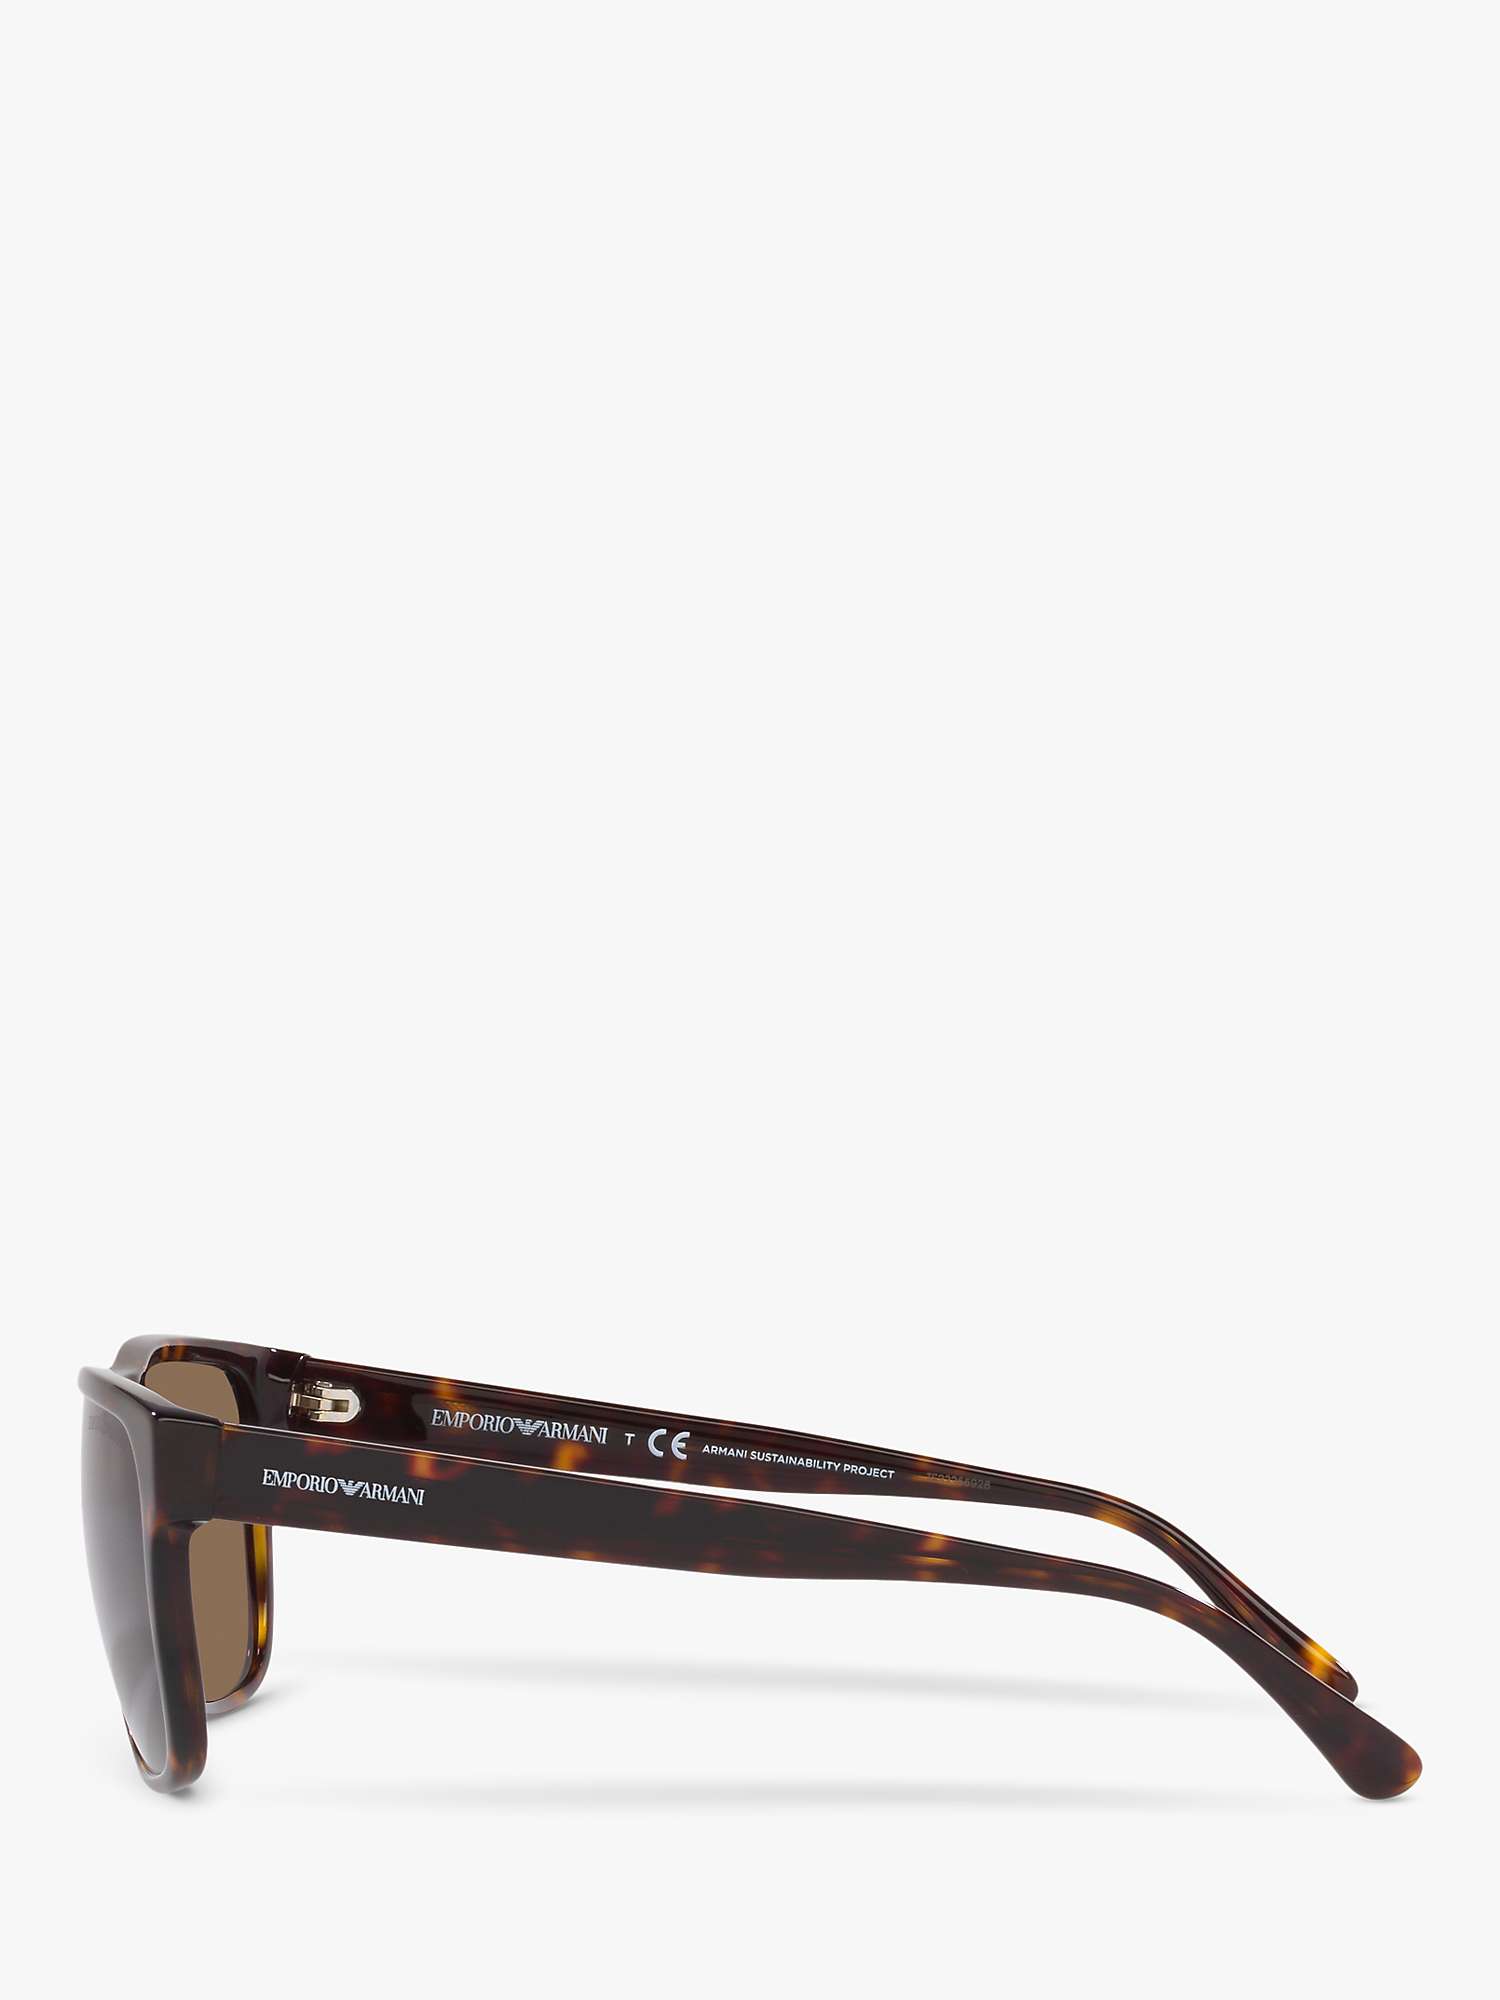 Buy Emporio Armani EA4163 Men's Square Sunglasses, Tortoise/Brown Gradient Online at johnlewis.com